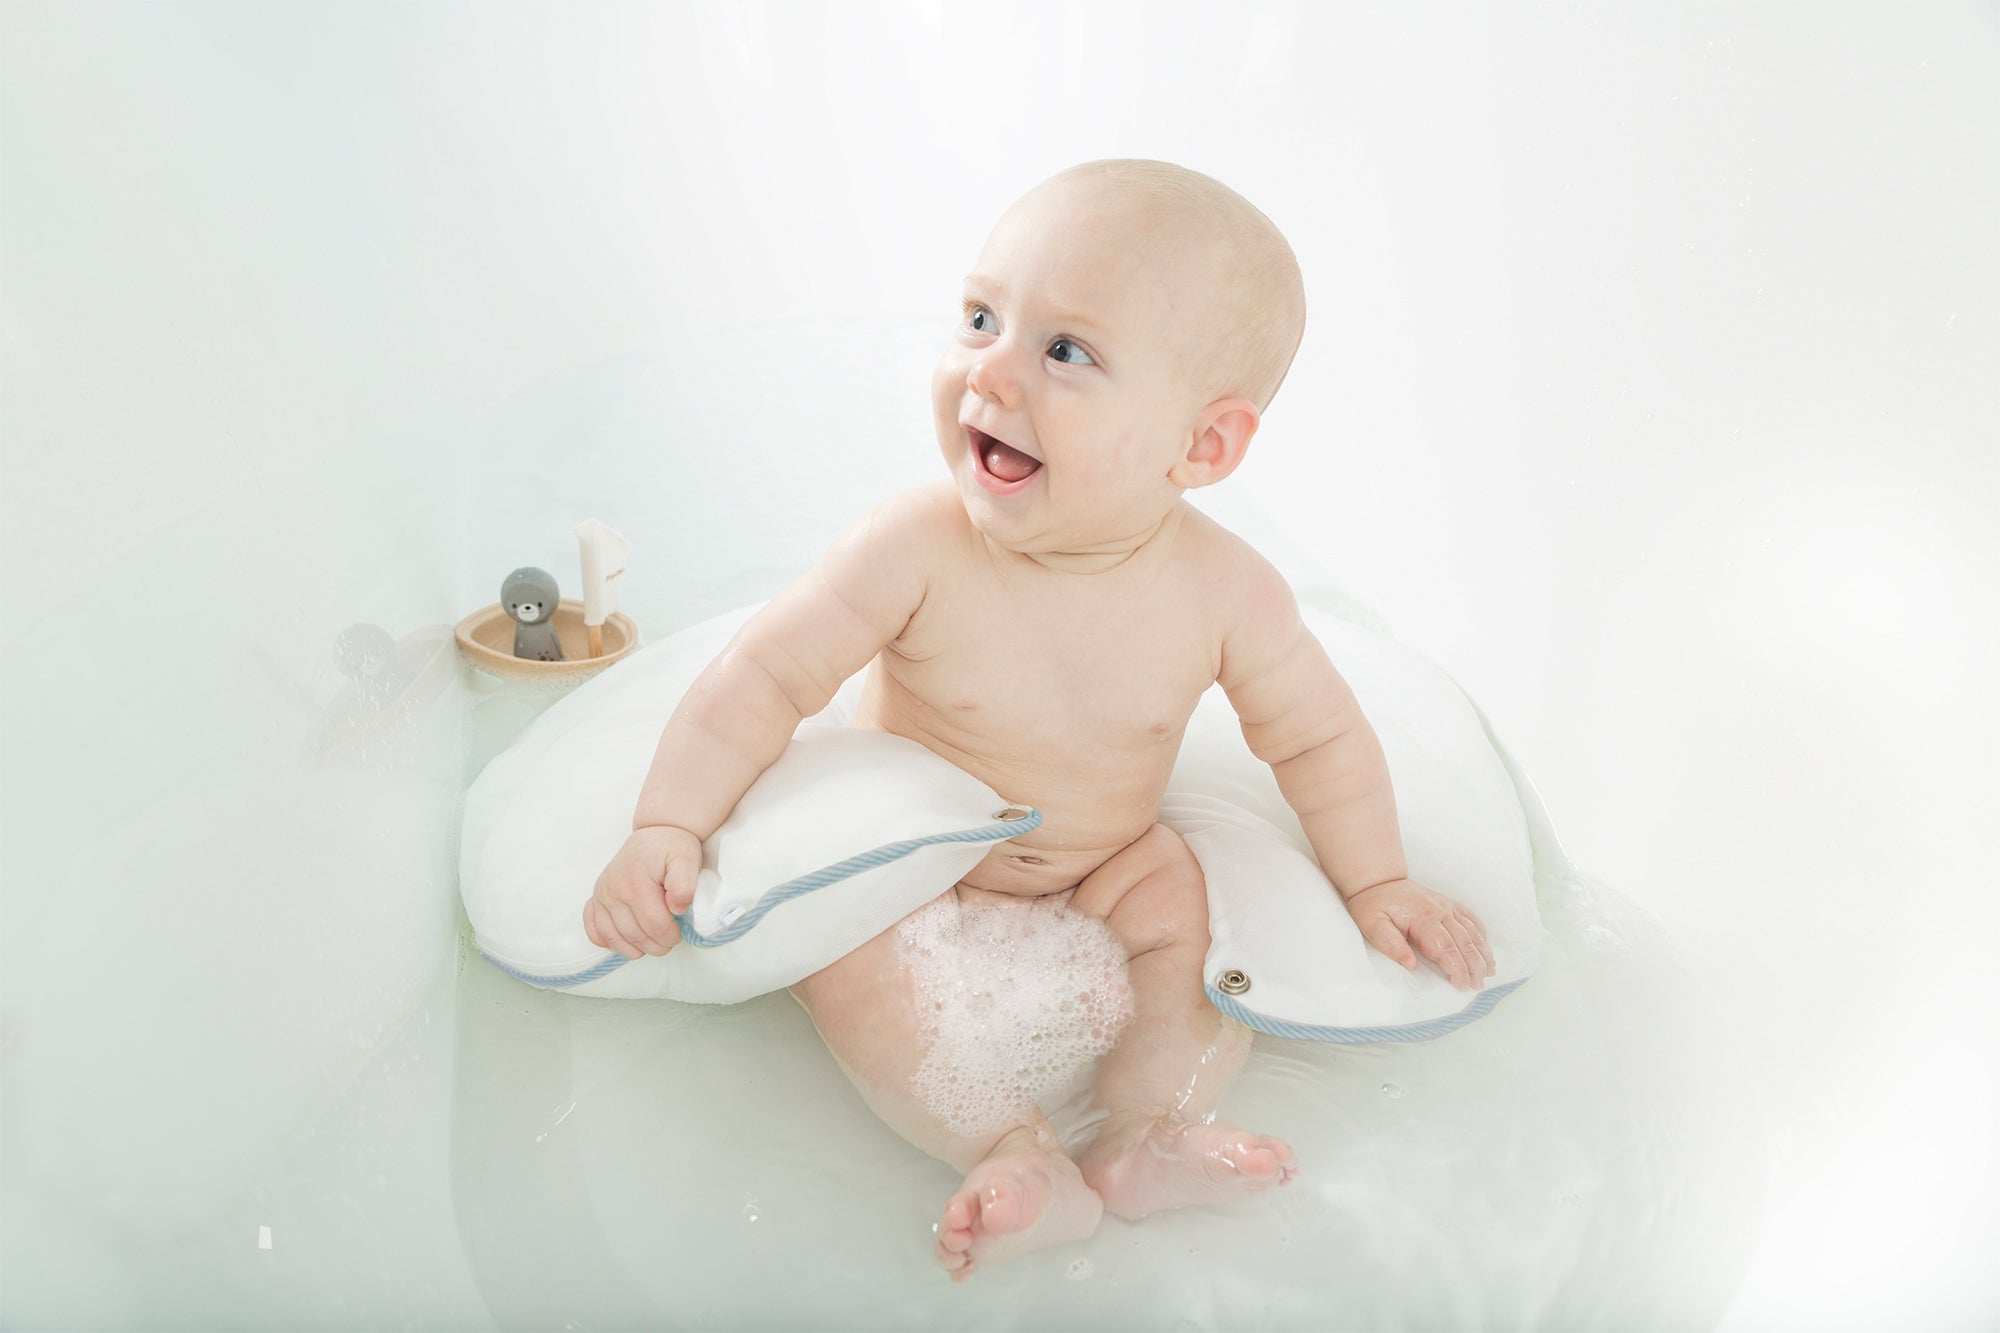 baby sitting in bath tub with doomoo comfy bath